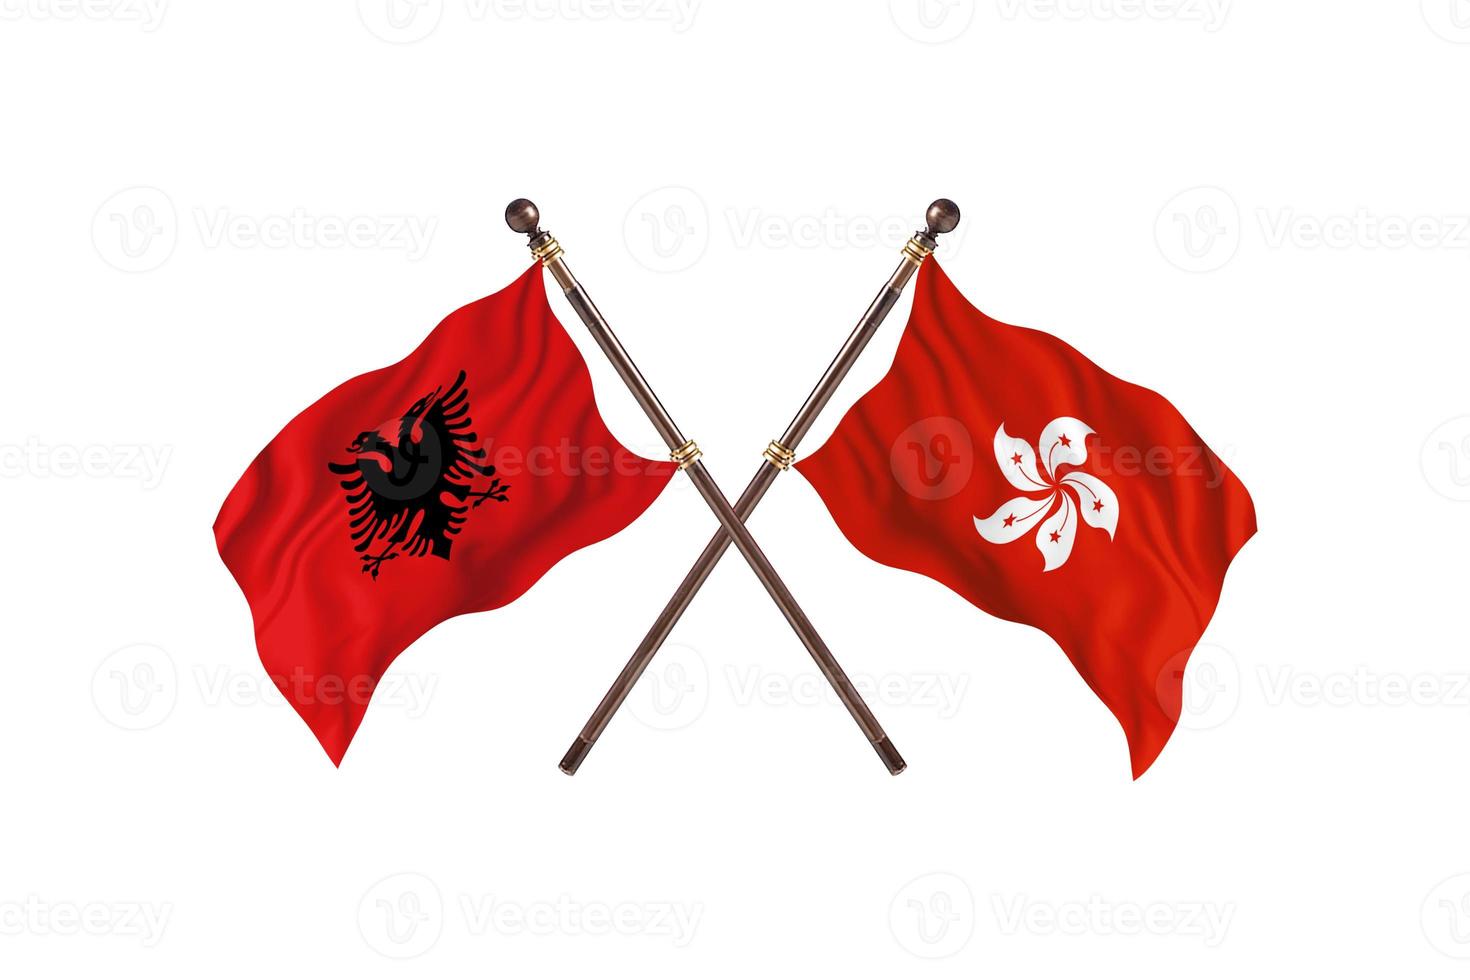 l'albanie contre hong kong deux drapeaux de pays photo